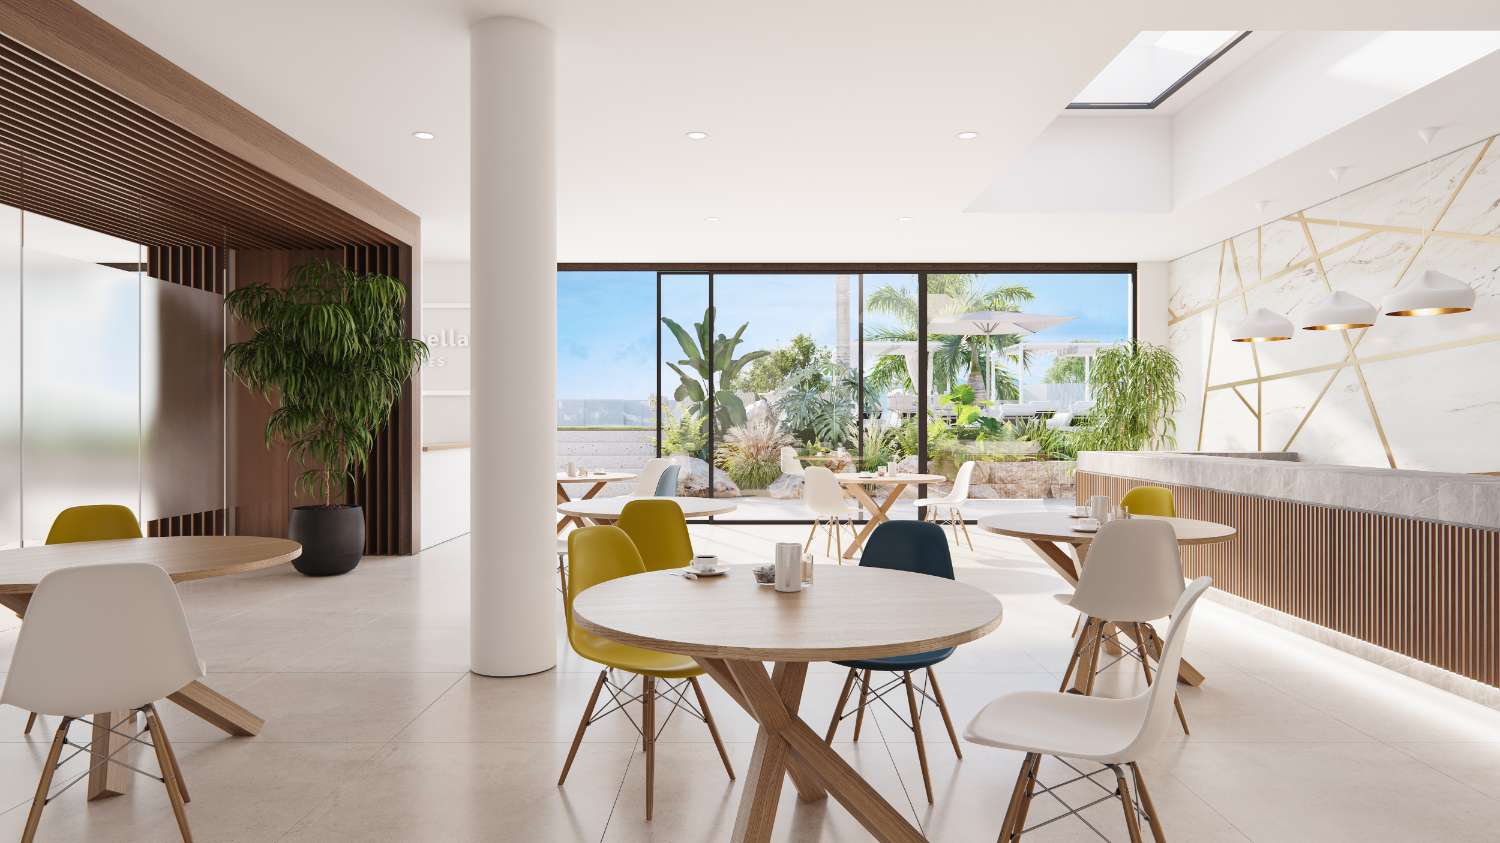 Lussuoso appartamento a Marbella, piano terra con giardino privato in urbanizzazione sulla prima linea del campo da golf